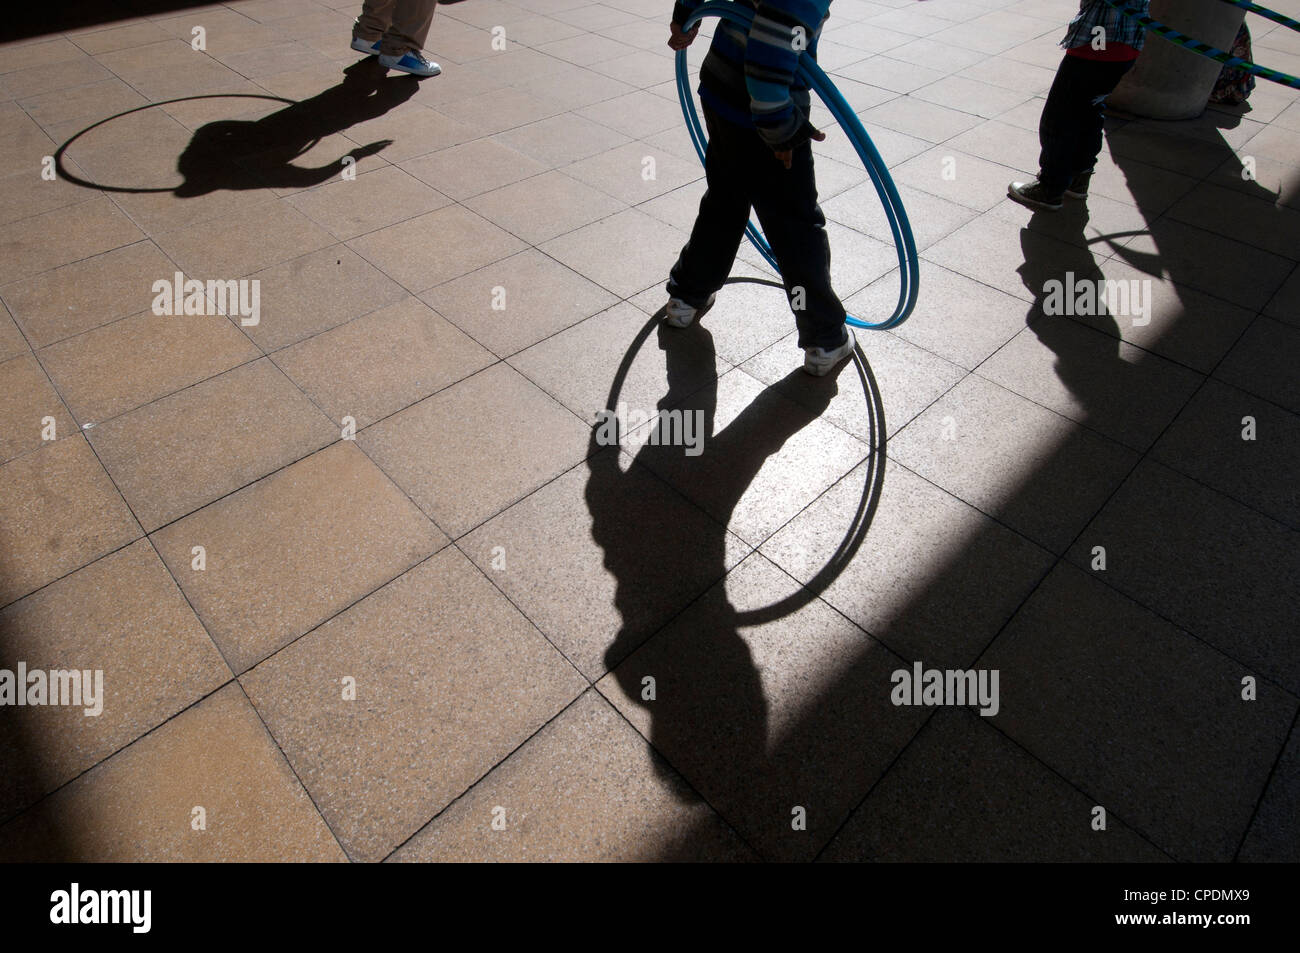 Hackney Central Library. Schatten der Kinder spielen mit Hula hoops Stockfoto